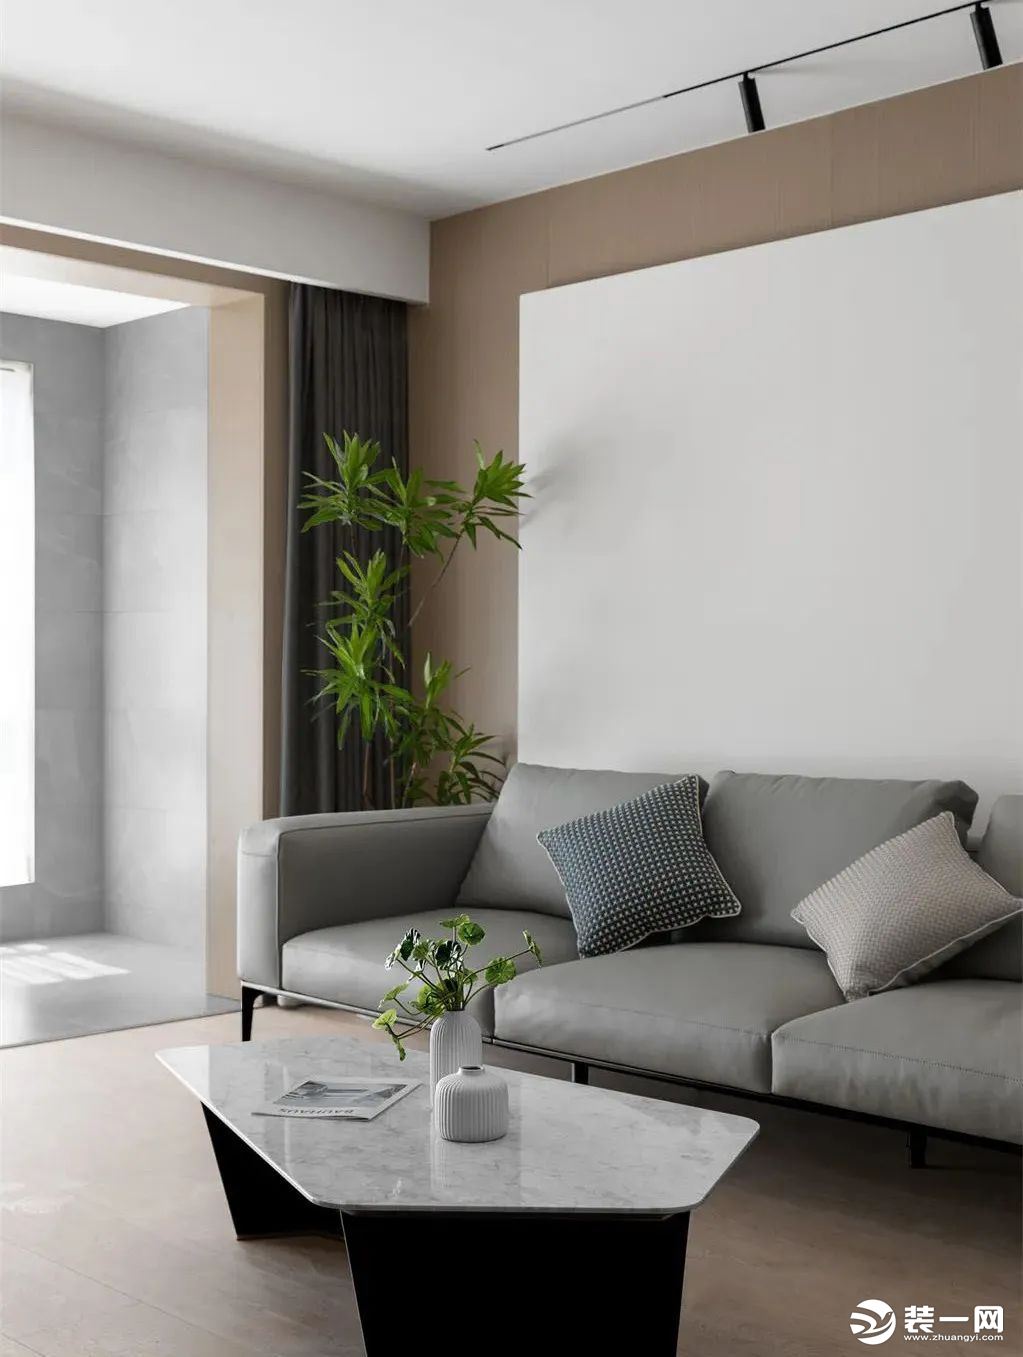 软装以灰色皮艺材质的沙发布置，搭配大理石纹异形茶几，背景墙以原木色和纯白色进行拼色设计，营造出简约又